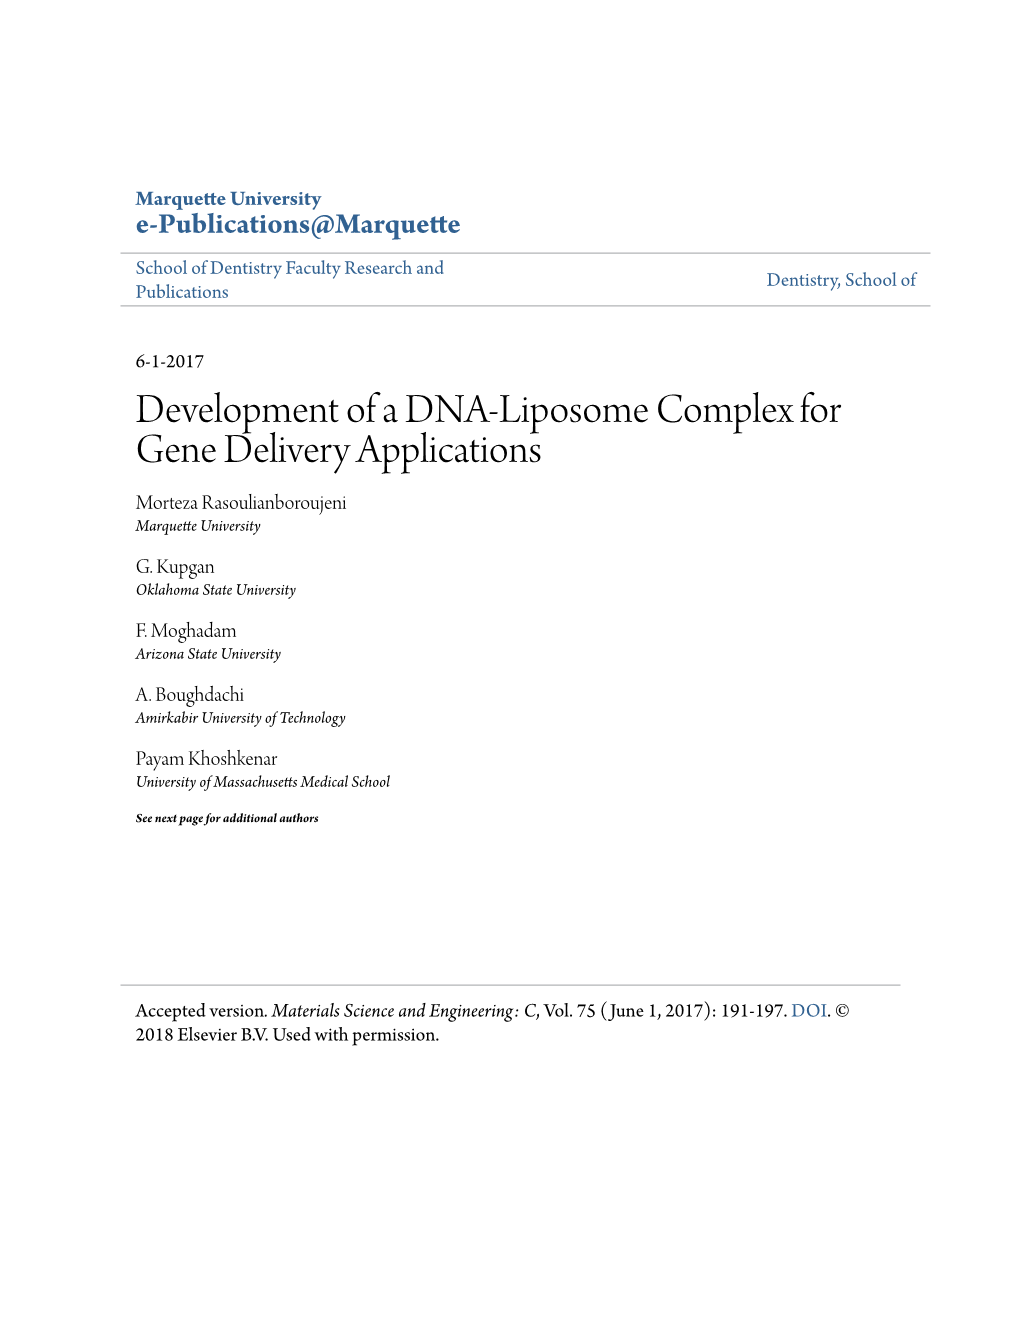 Development of a DNA-Liposome Complex for Gene Delivery Applications Morteza Rasoulianboroujeni Marquette University